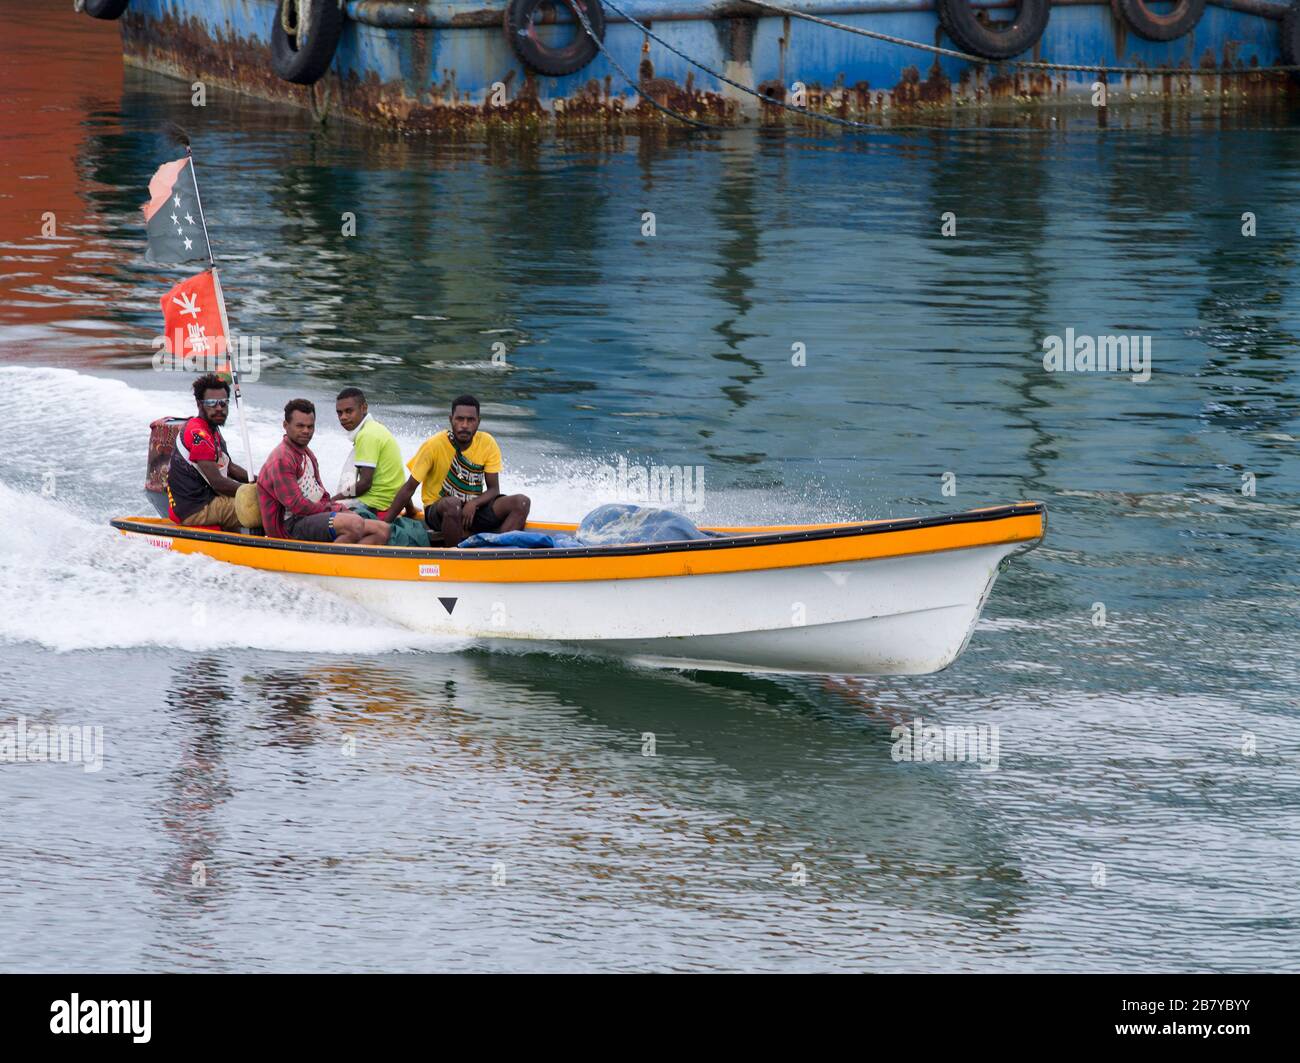 dh Speedboat Passagiere MADANG PAPUA NEUGUINEA Bootsladung der einheimischen Bevölkerung Stockfoto